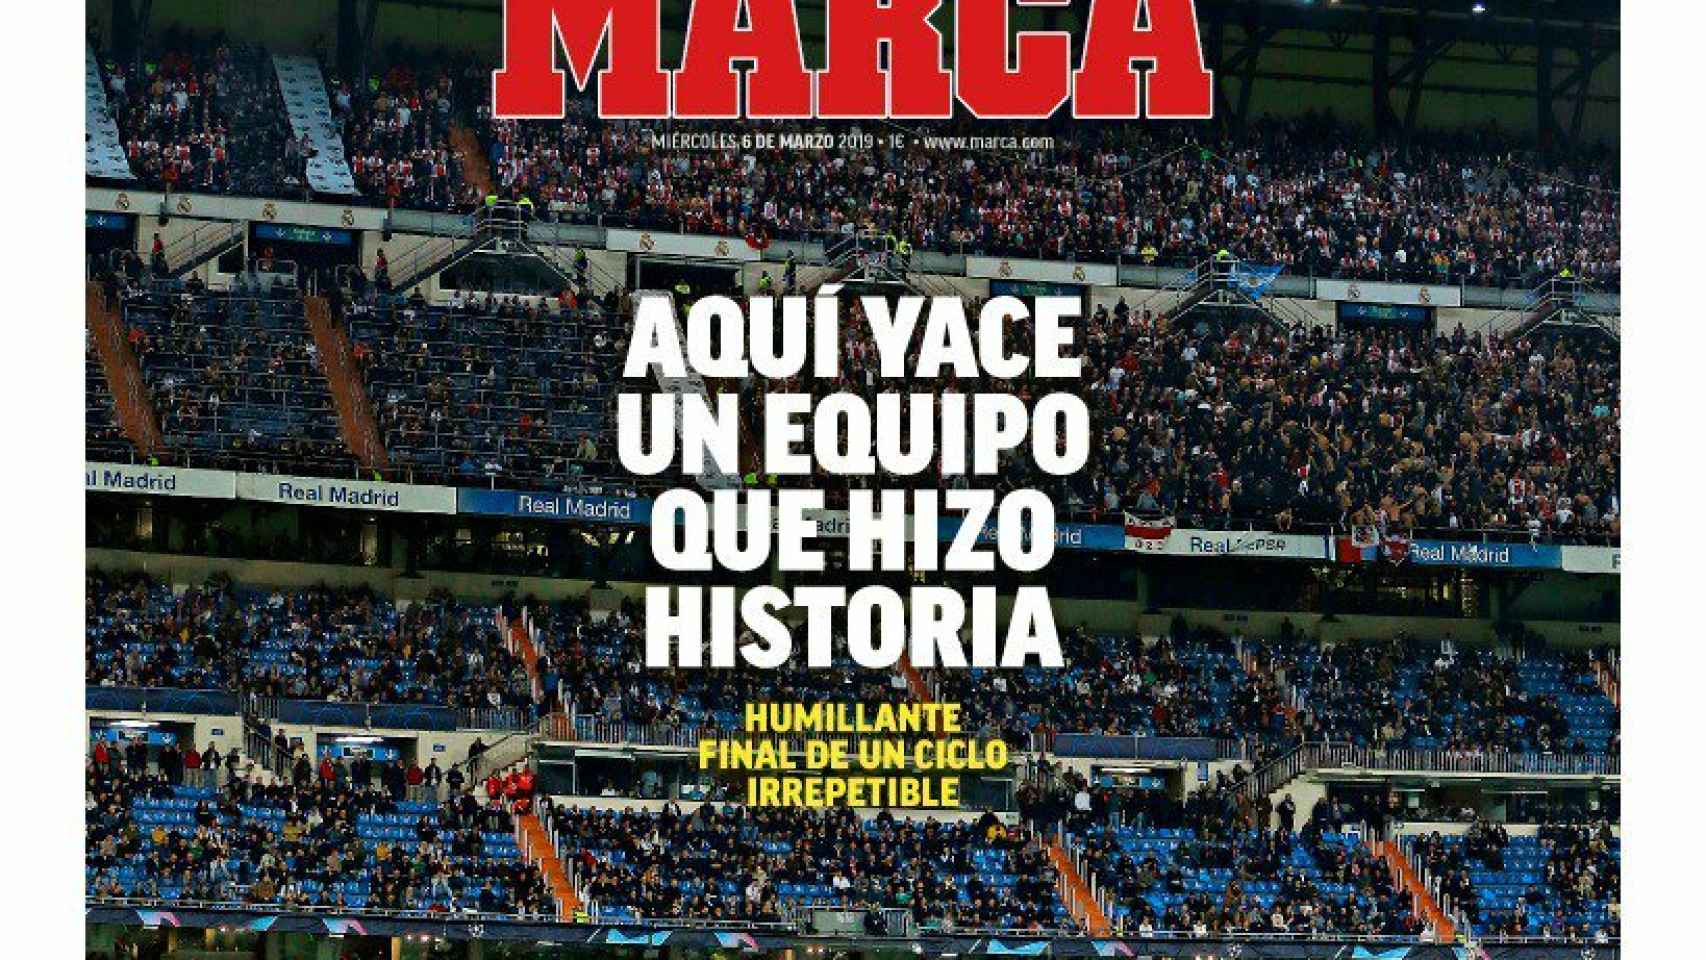 La portada del diario MARCA (06/03/2019)